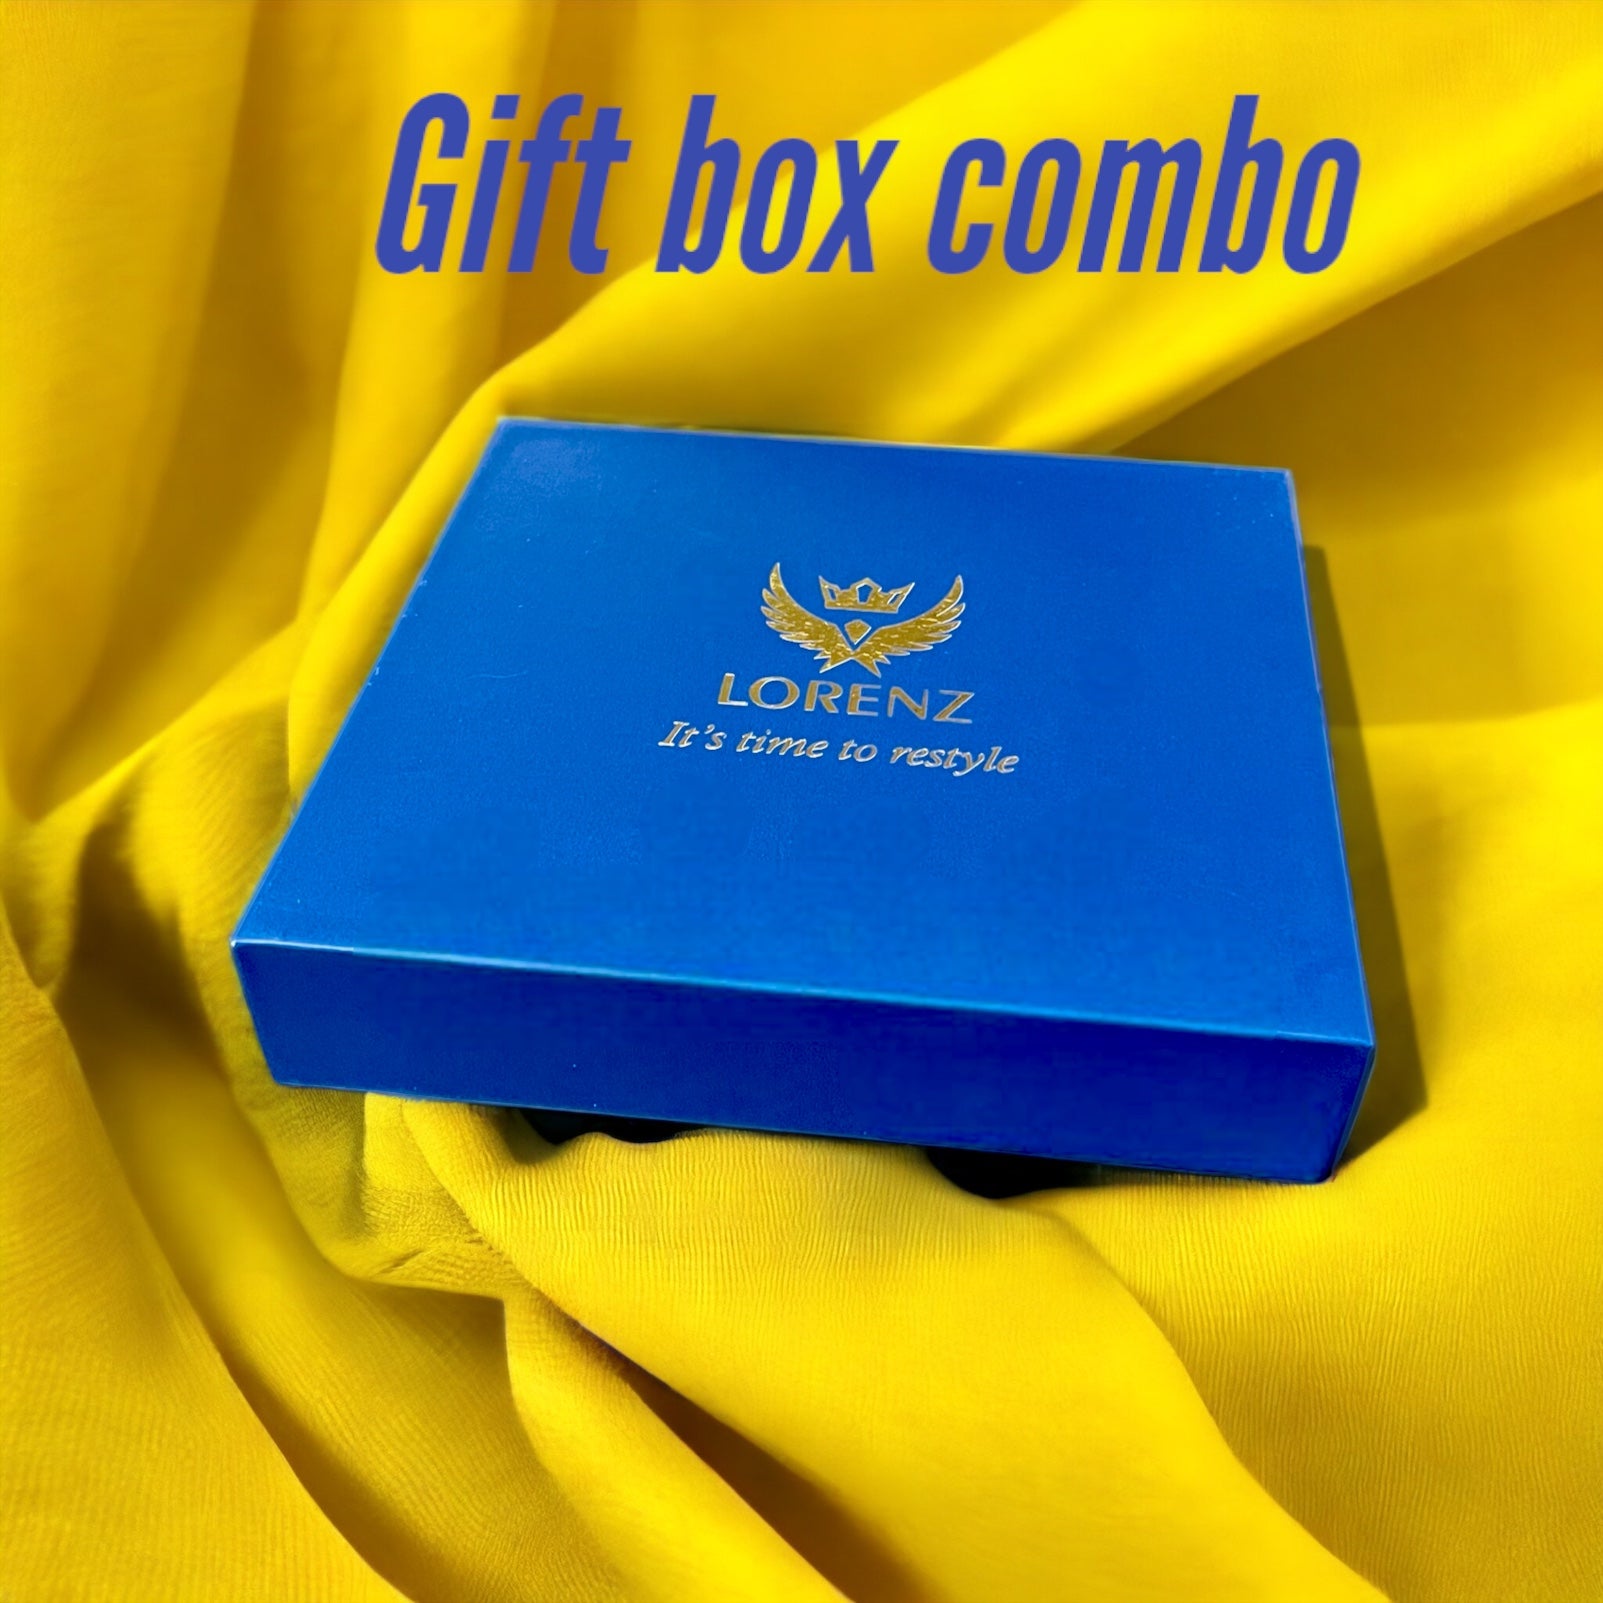 lorenz gift box combo